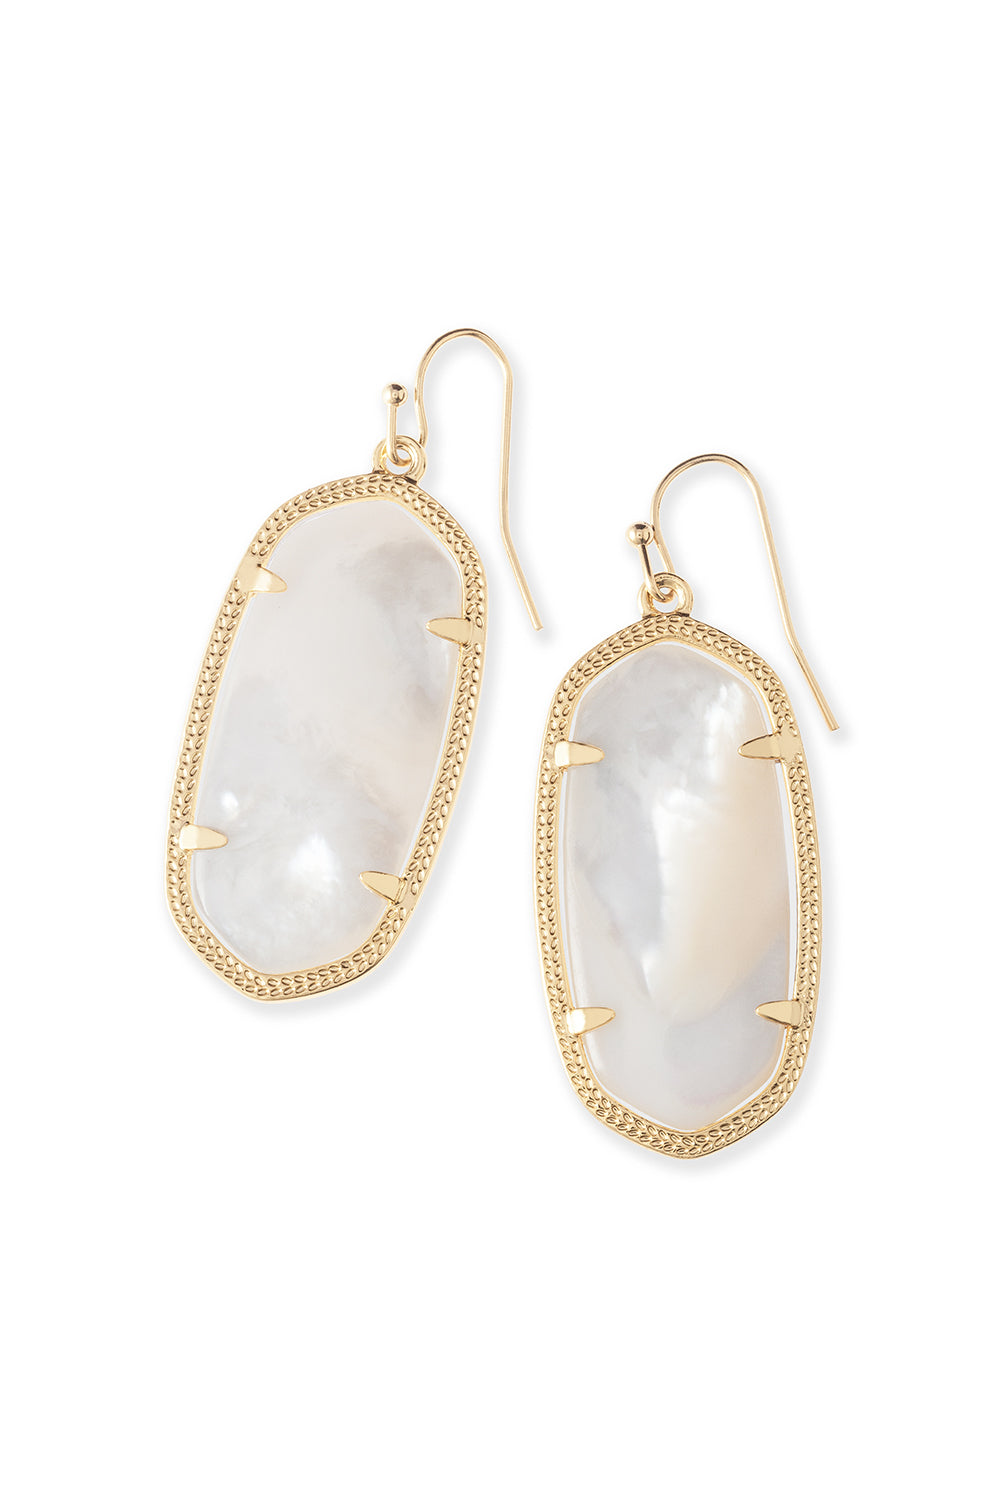 Kendra Scott: Elle Gold Drop Earrings - Ivory Mother Of Pearl | Makk Fashions